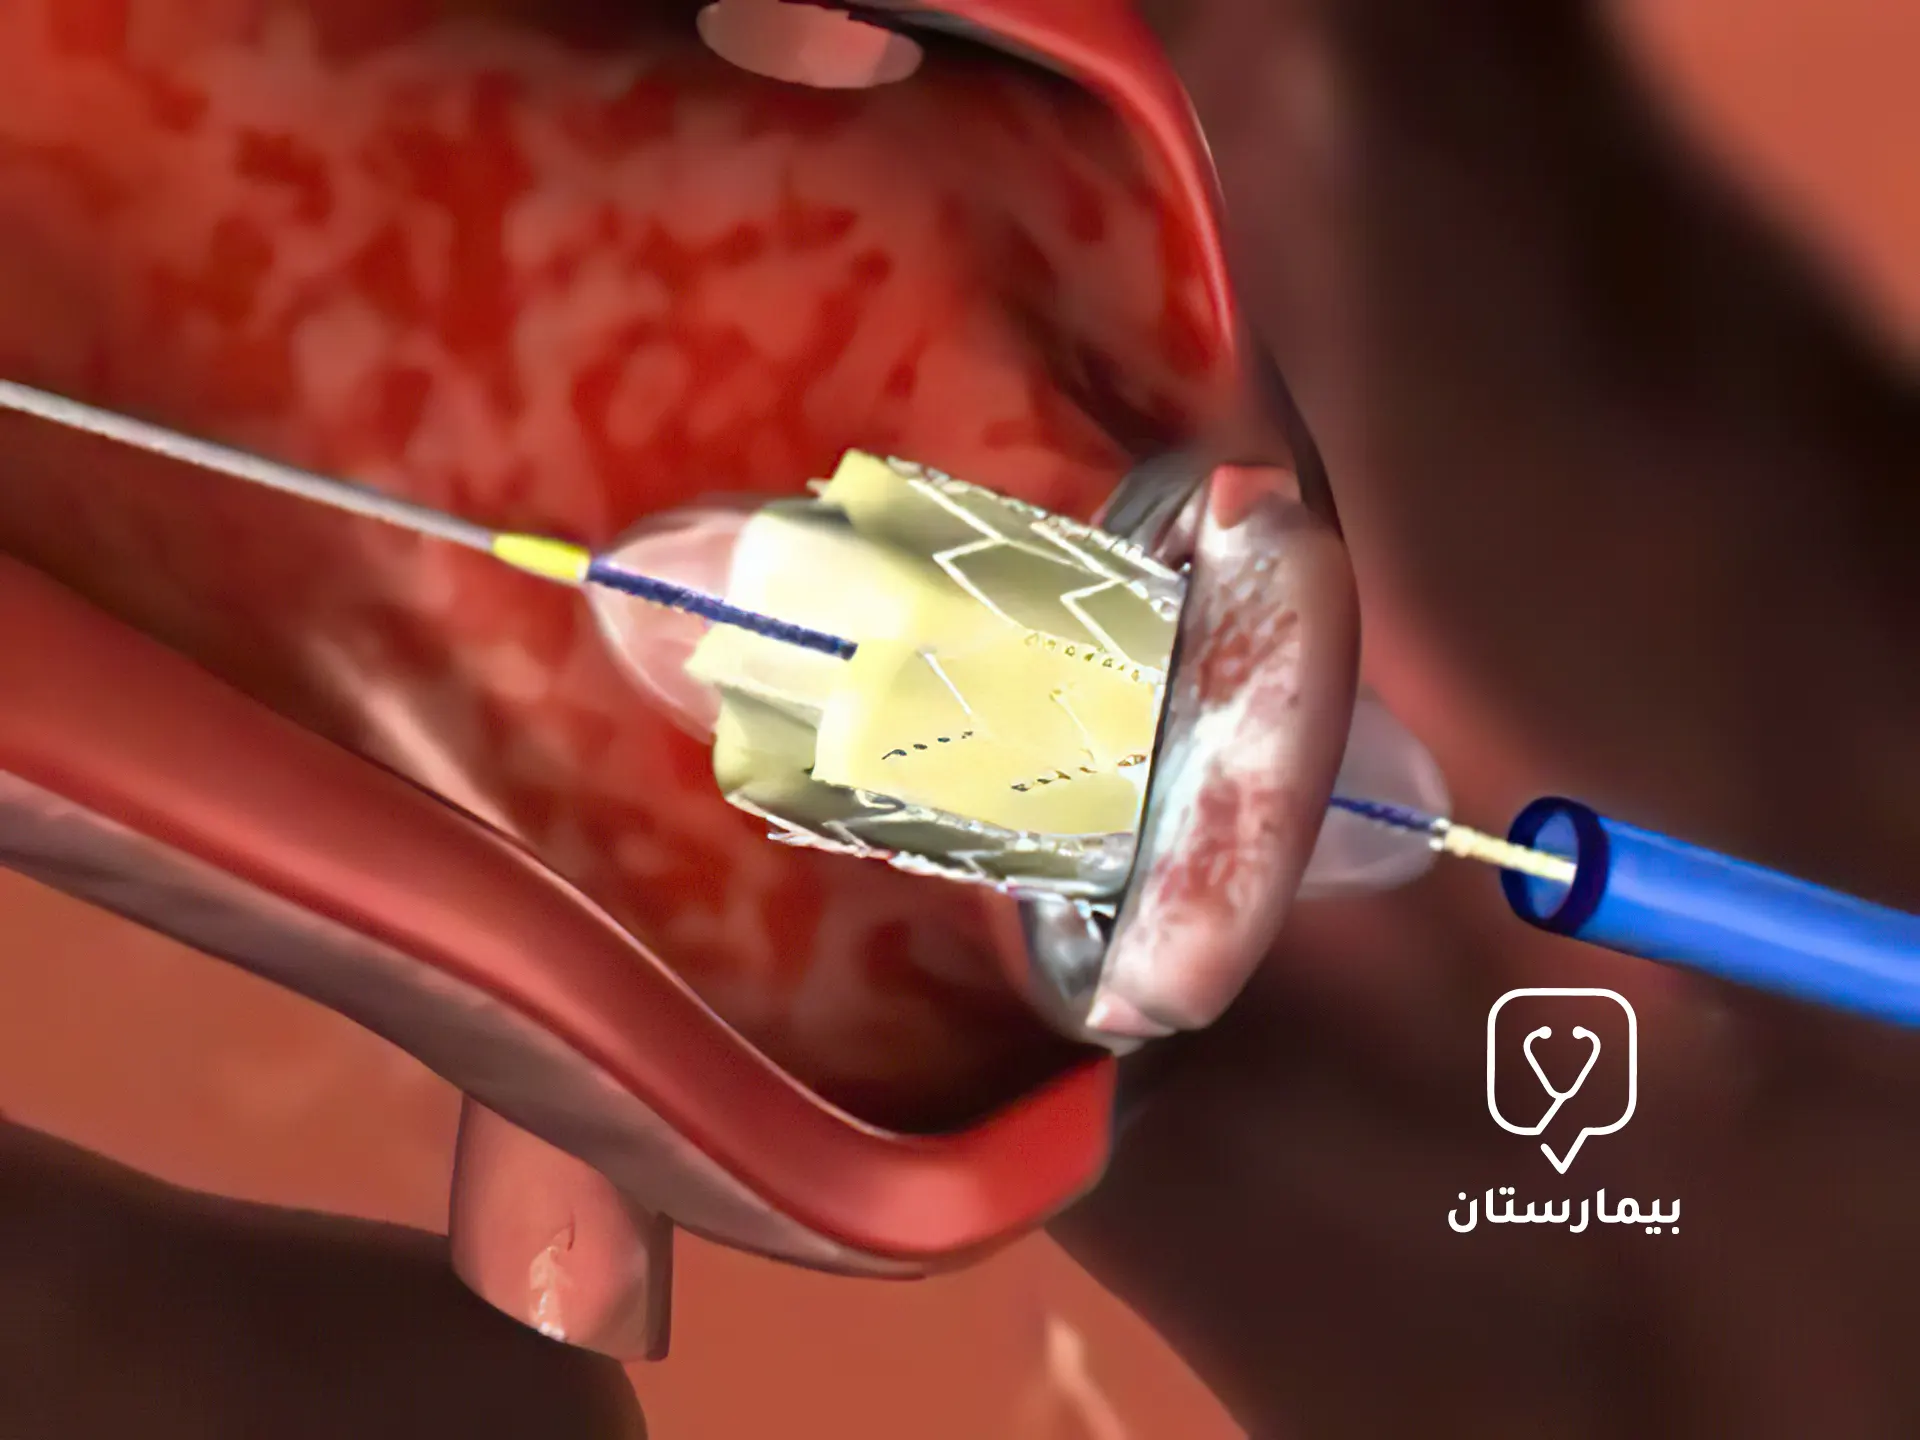 Aort kapağına, ucunda şişirilebilir balon bulunan bir kateter yerleştirilir.